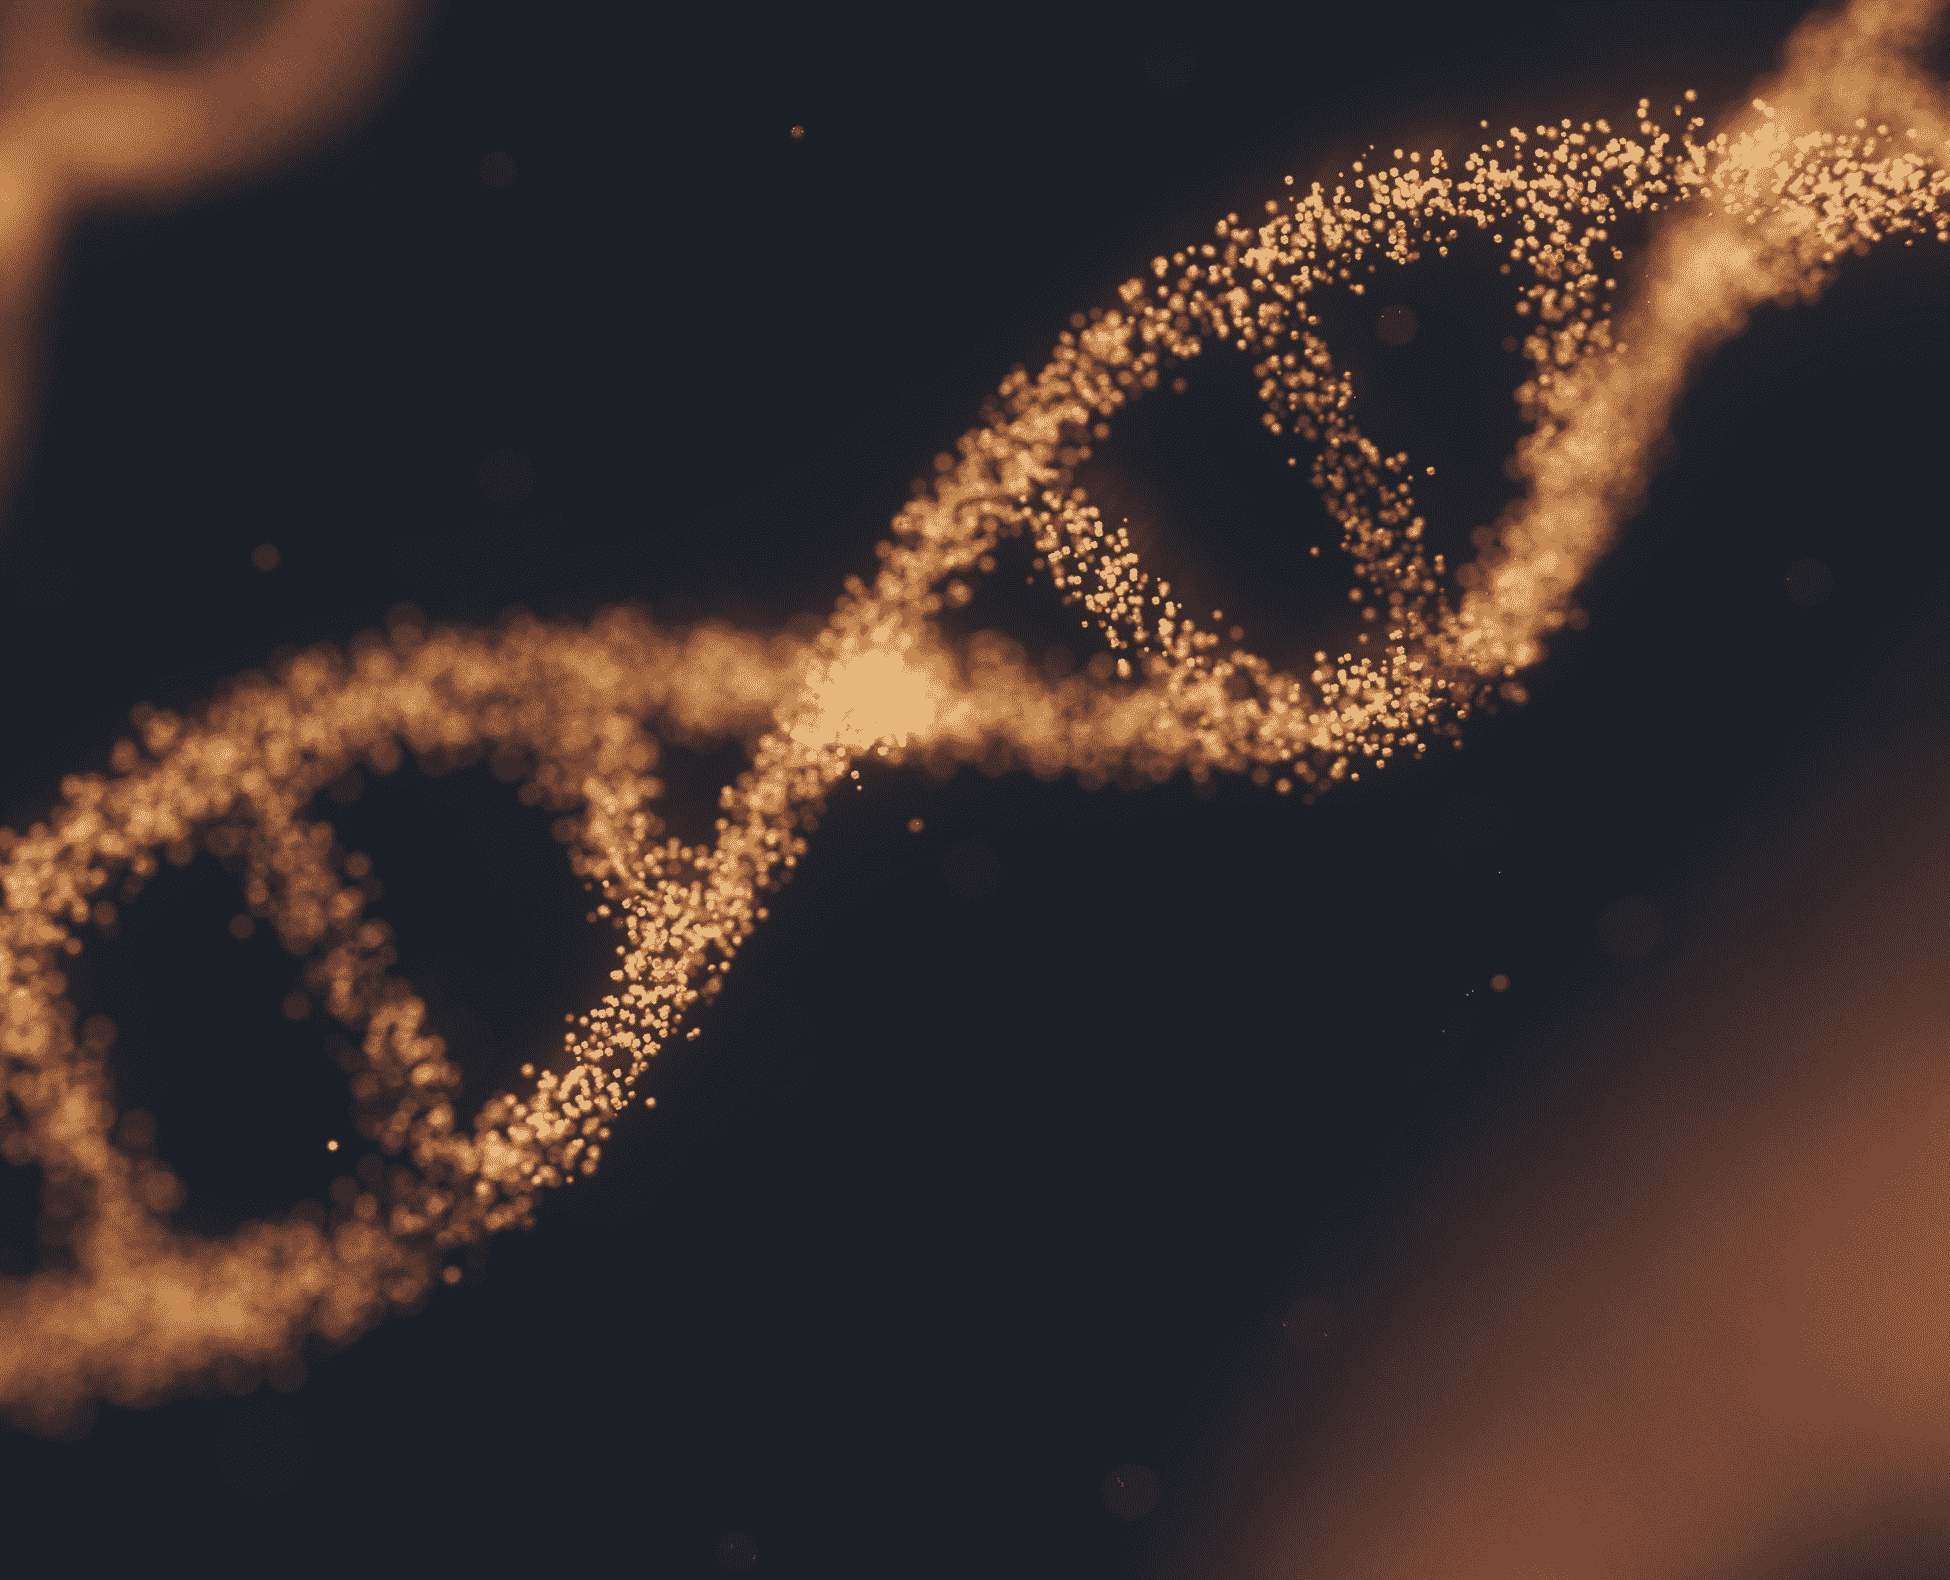 Golden DNA strand disintegrating on a black background